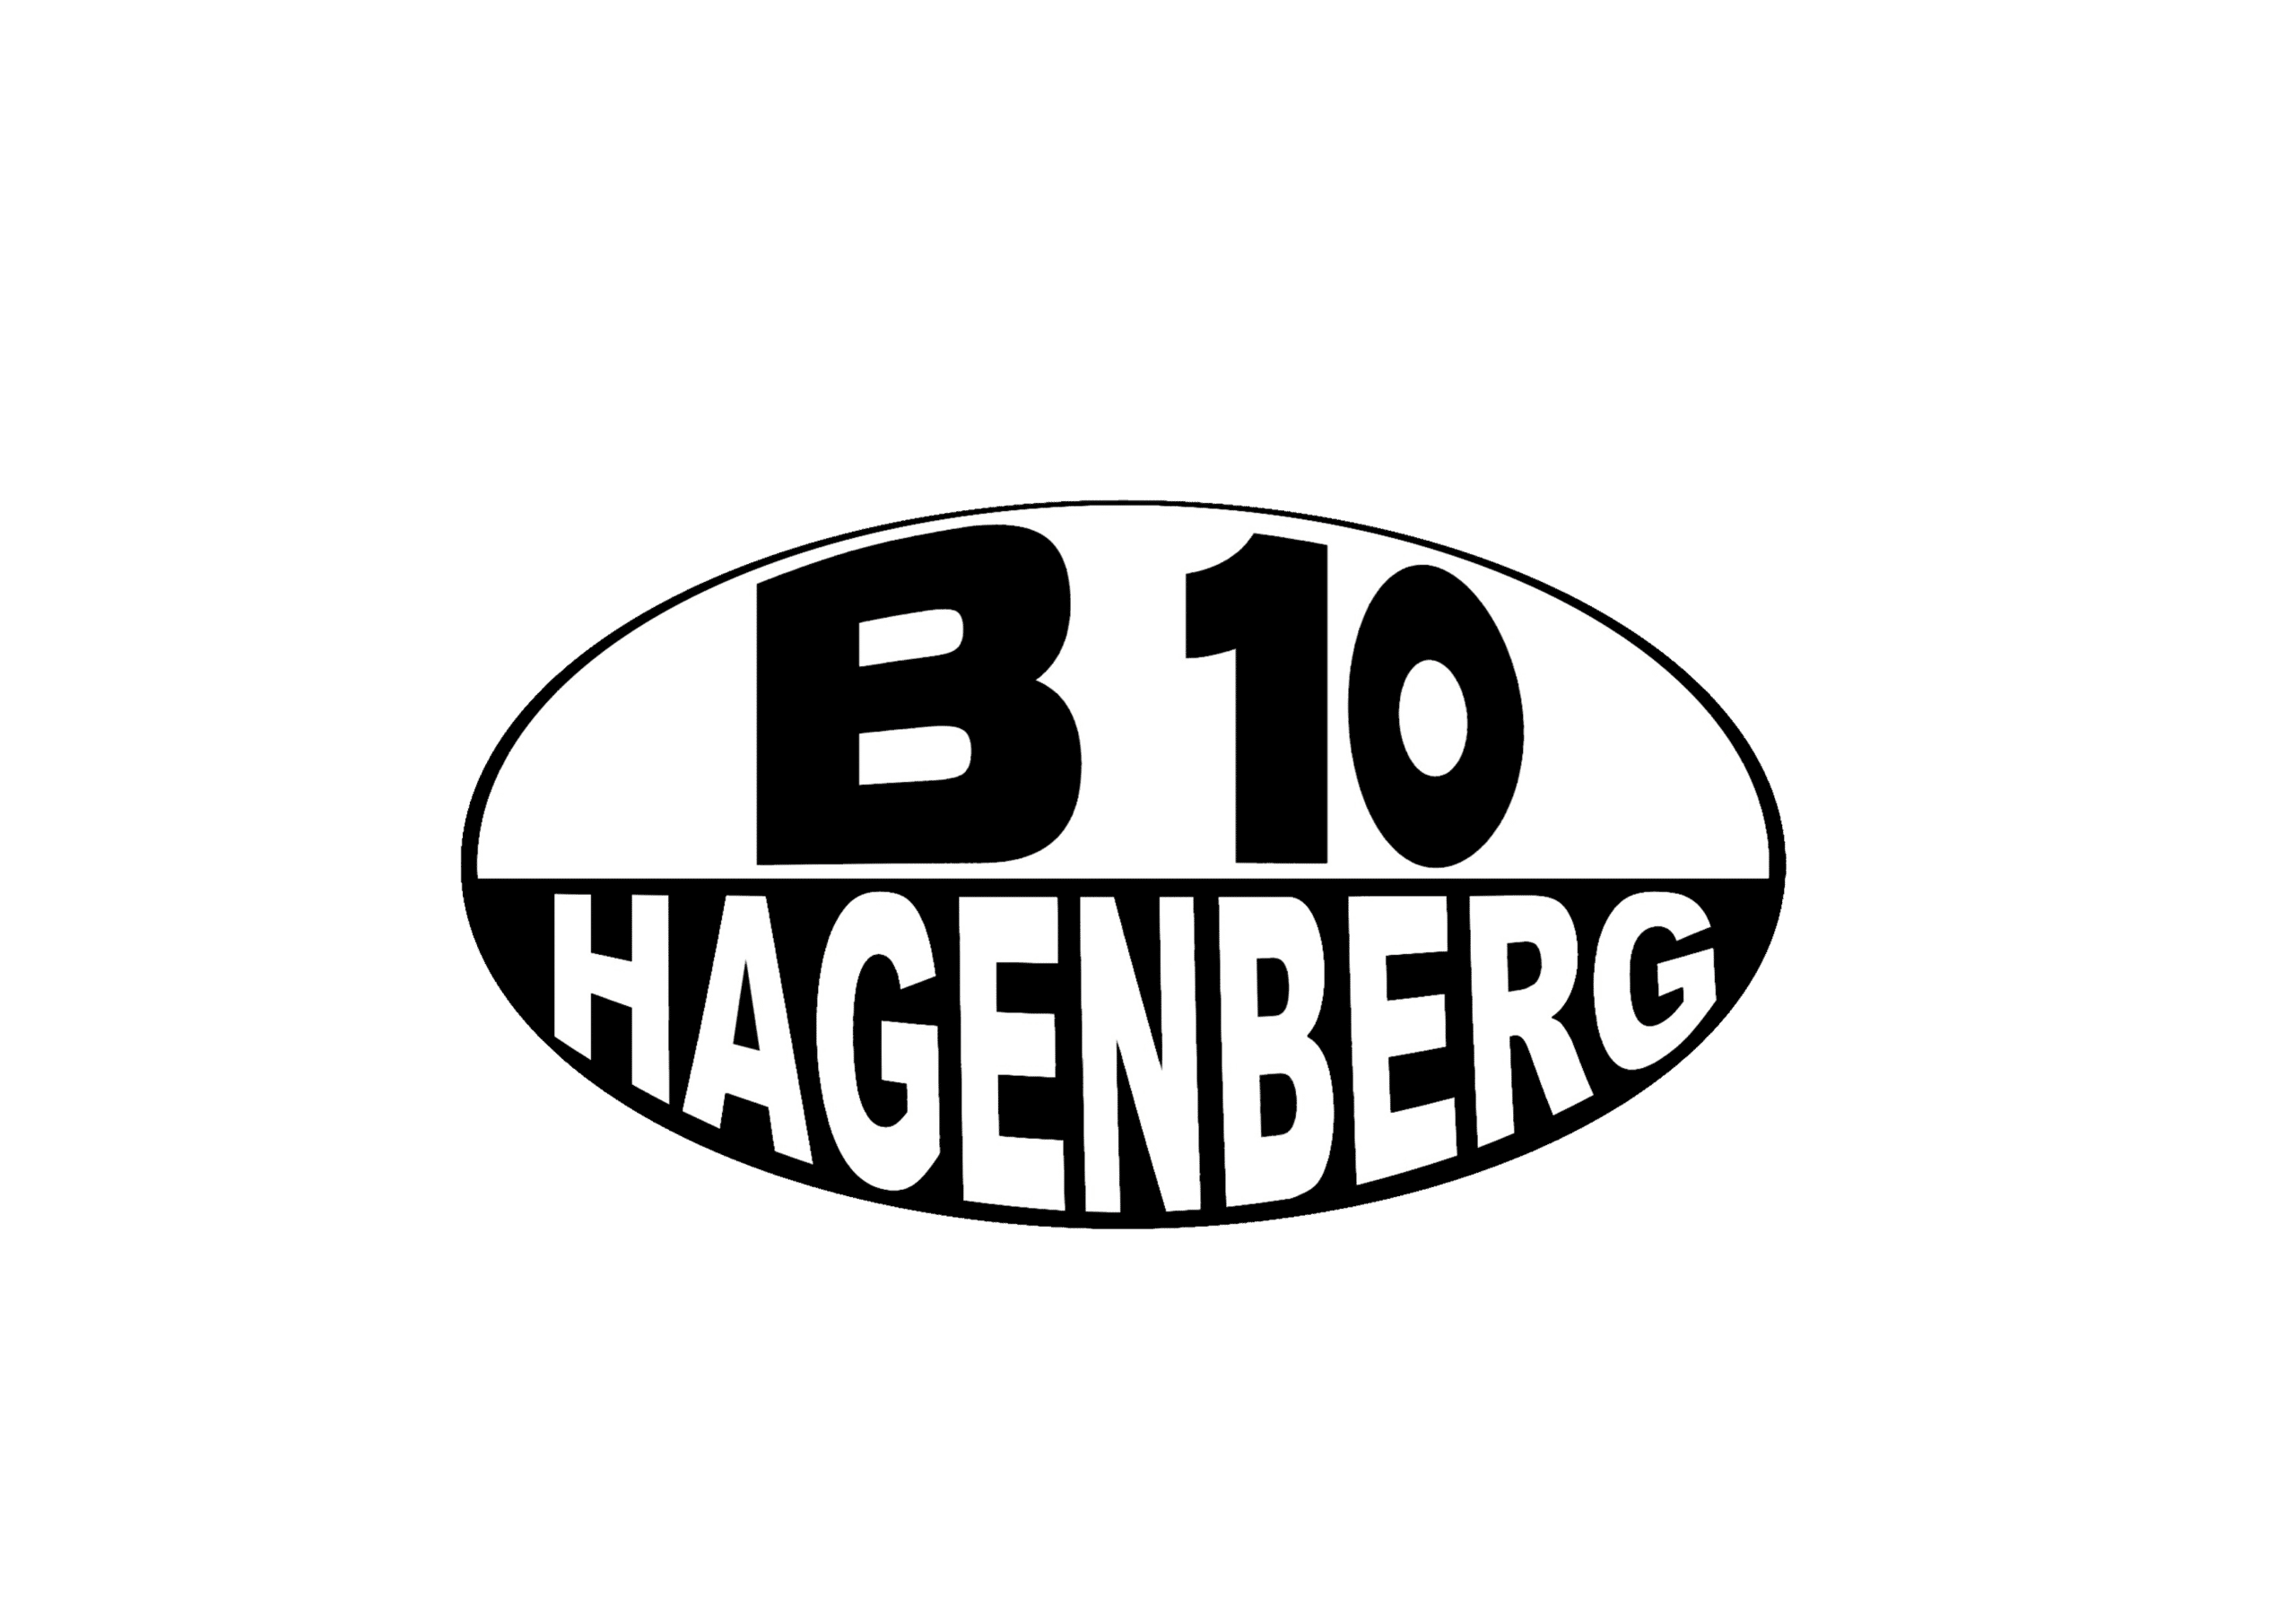 B10 Hagenberg, Partys in der B10, Disco im Weinviertel Partys, Disco Niederösaterreich, Partys Niederöstereich, B10 Hagenberg Partys, B10 Hagenberg Logo, angesagte Disco im Weinviertel, B10 Hagenberg, Clubbing, Partykult, Discothek im Weinviertel, Disco in Niederösterreich,